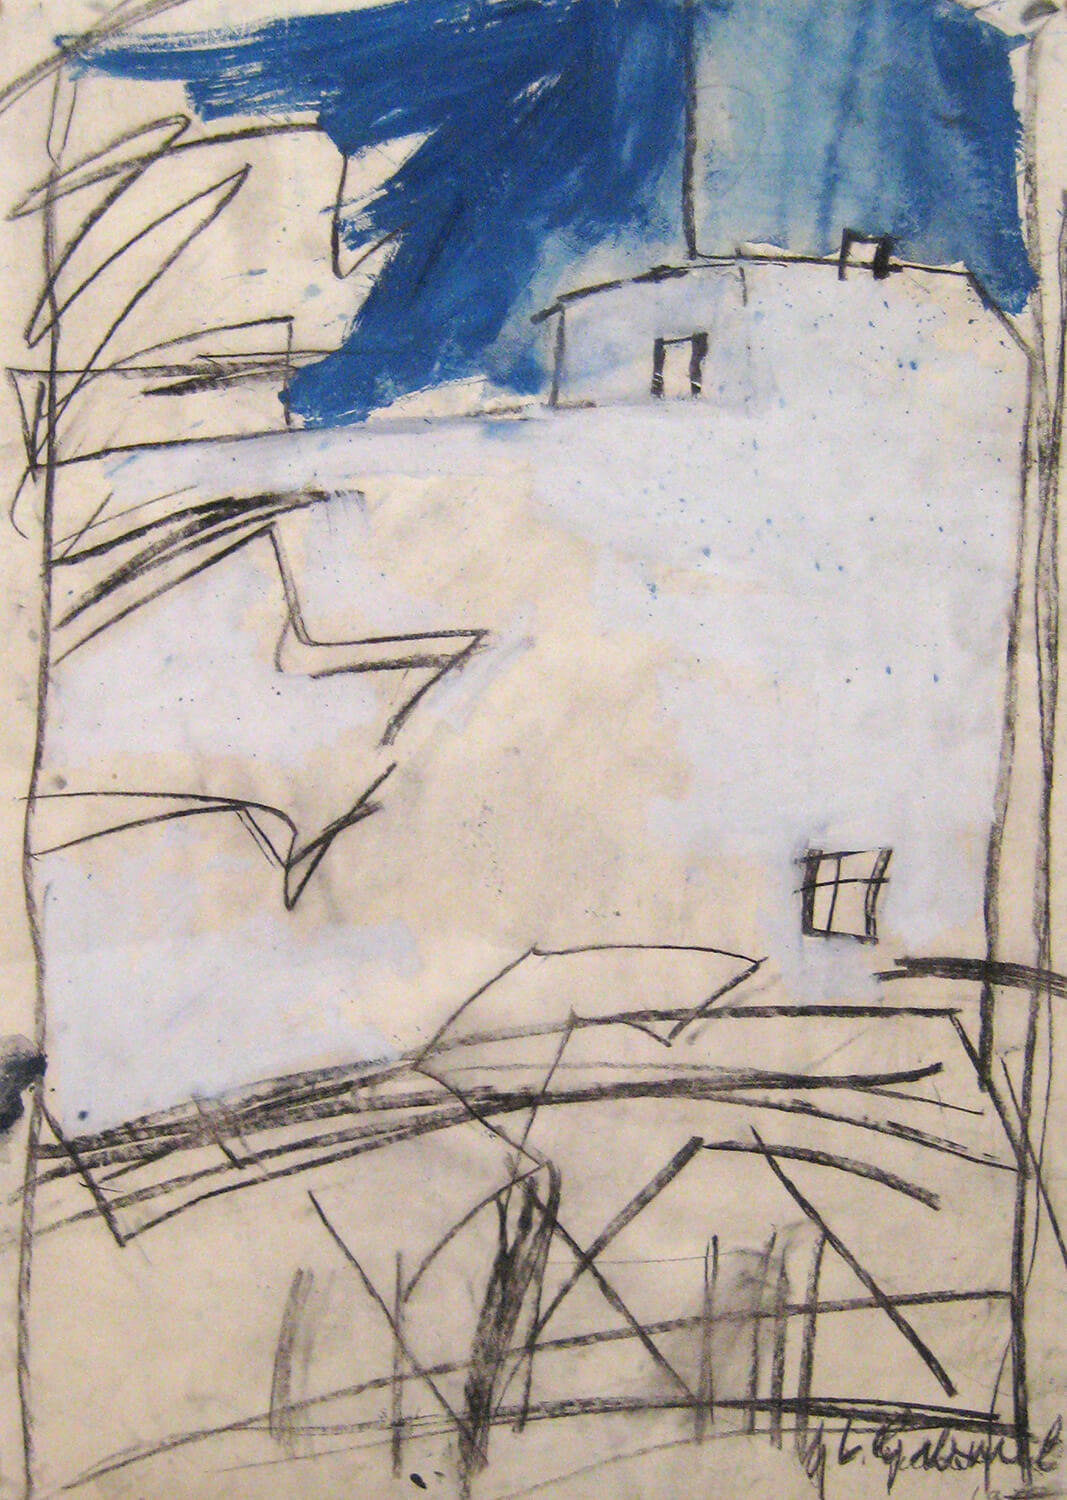 G. L. Gabriel, View, 1982, mixed media on paper, 105 x 78 cm